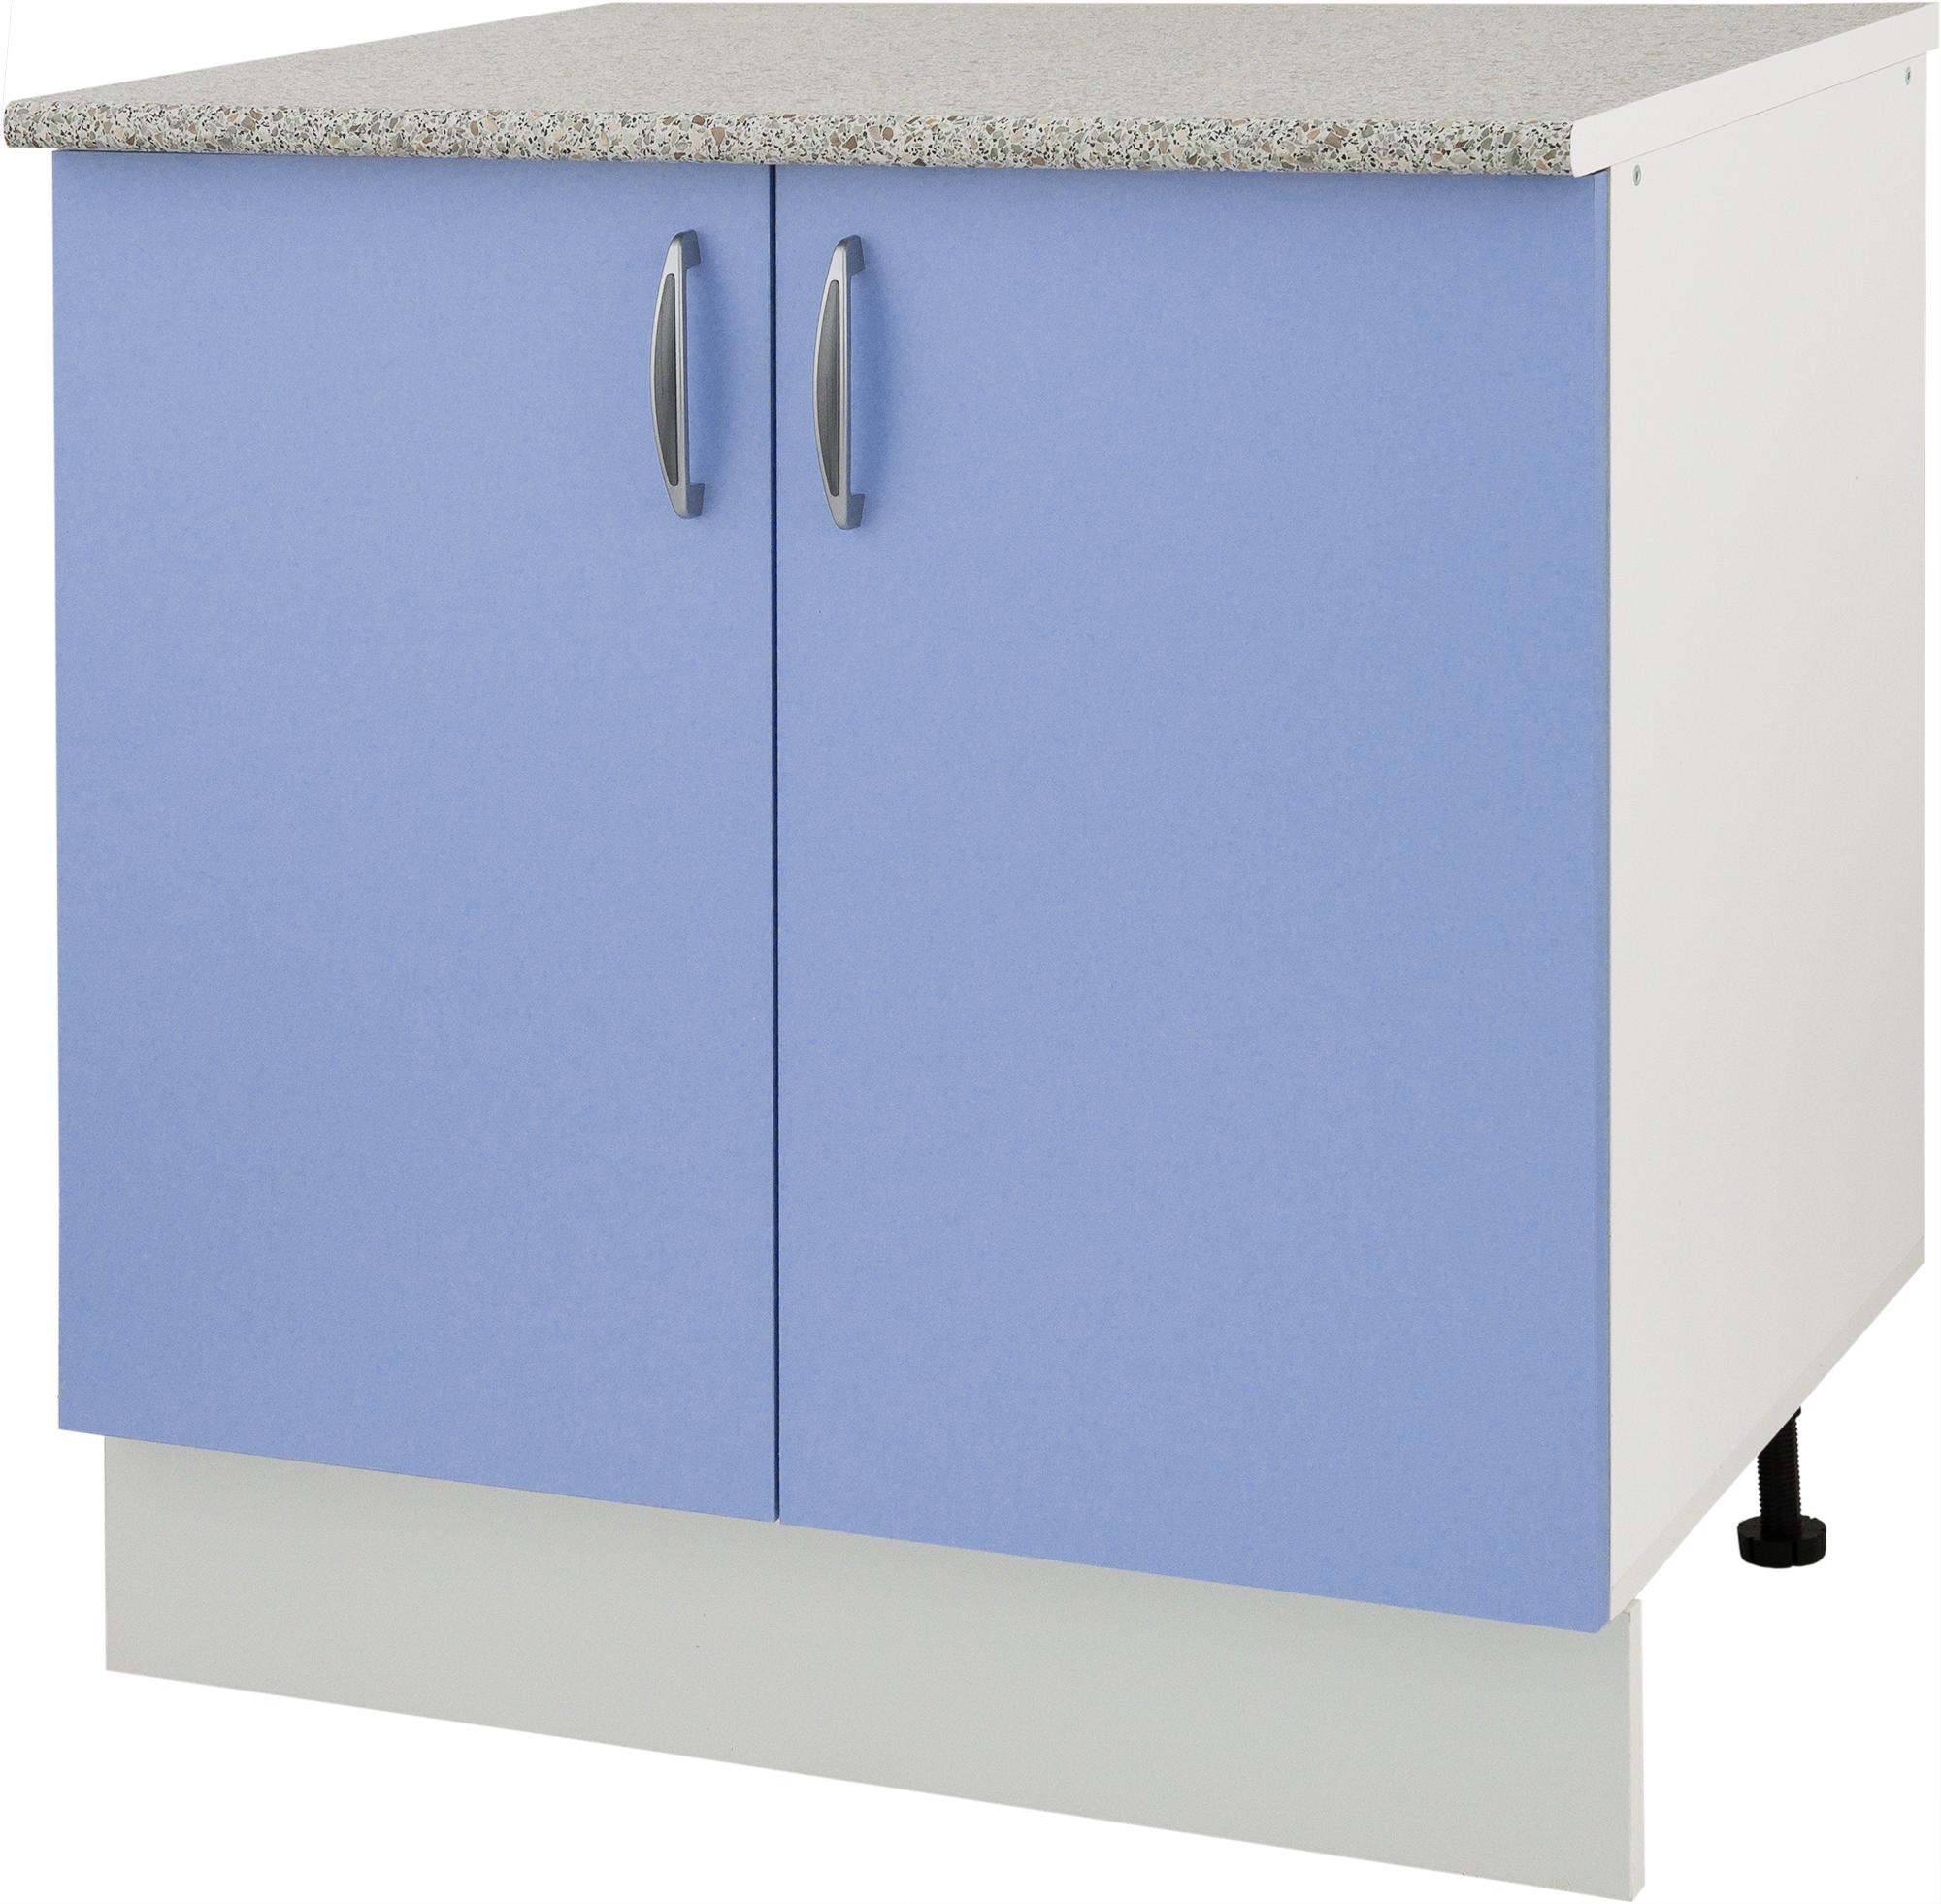 Шкаф напольный Лагуна СП 85х80 см цвет голубой. Шкаф кухонный напольный 80 см Леруа Мерлен. Шкаф напольный «Лагуна д». Кухня Лагуна Леруа Мерлен.